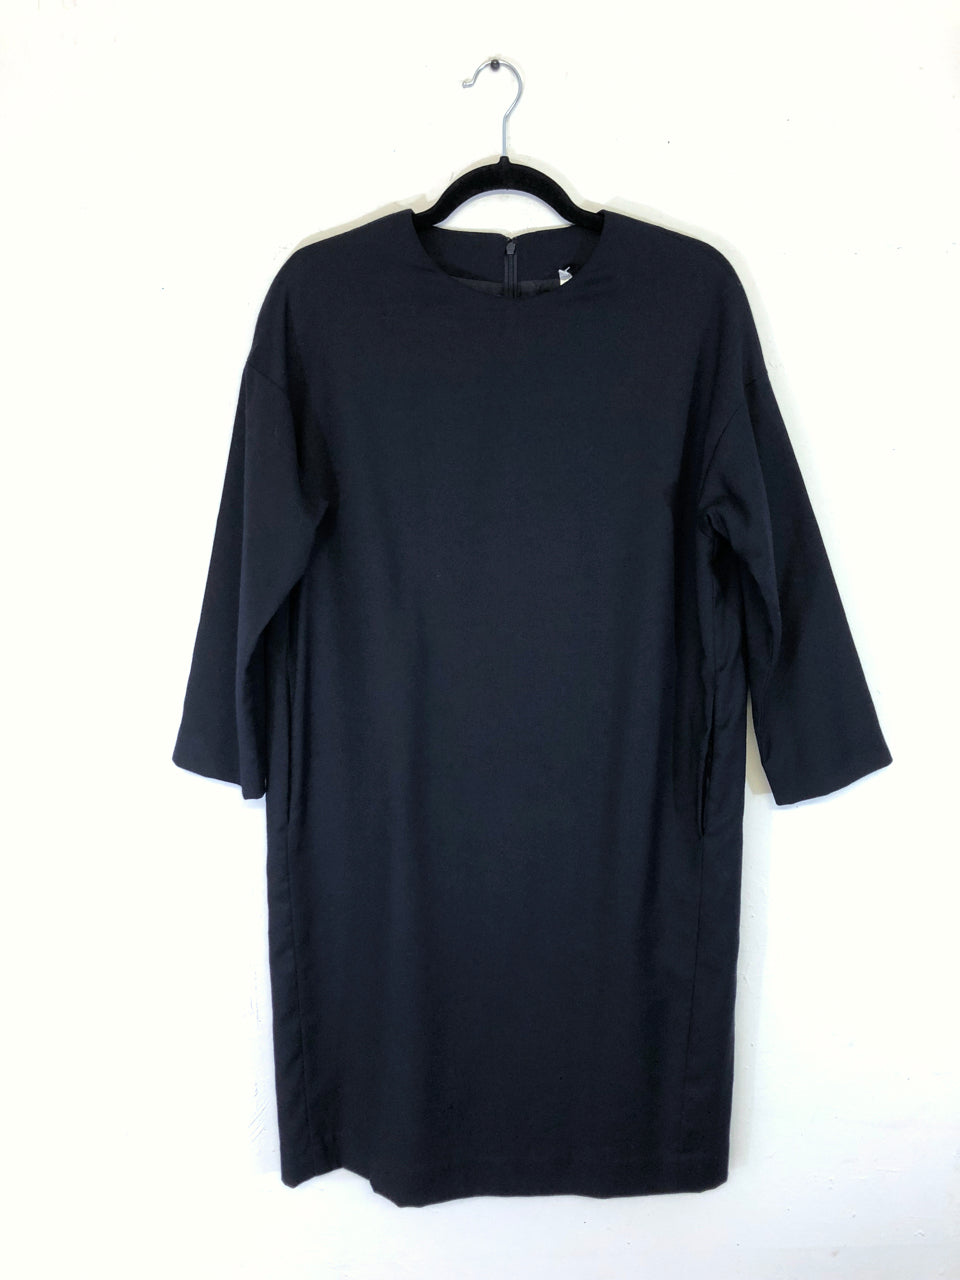 Black Long-Sleeved Dress